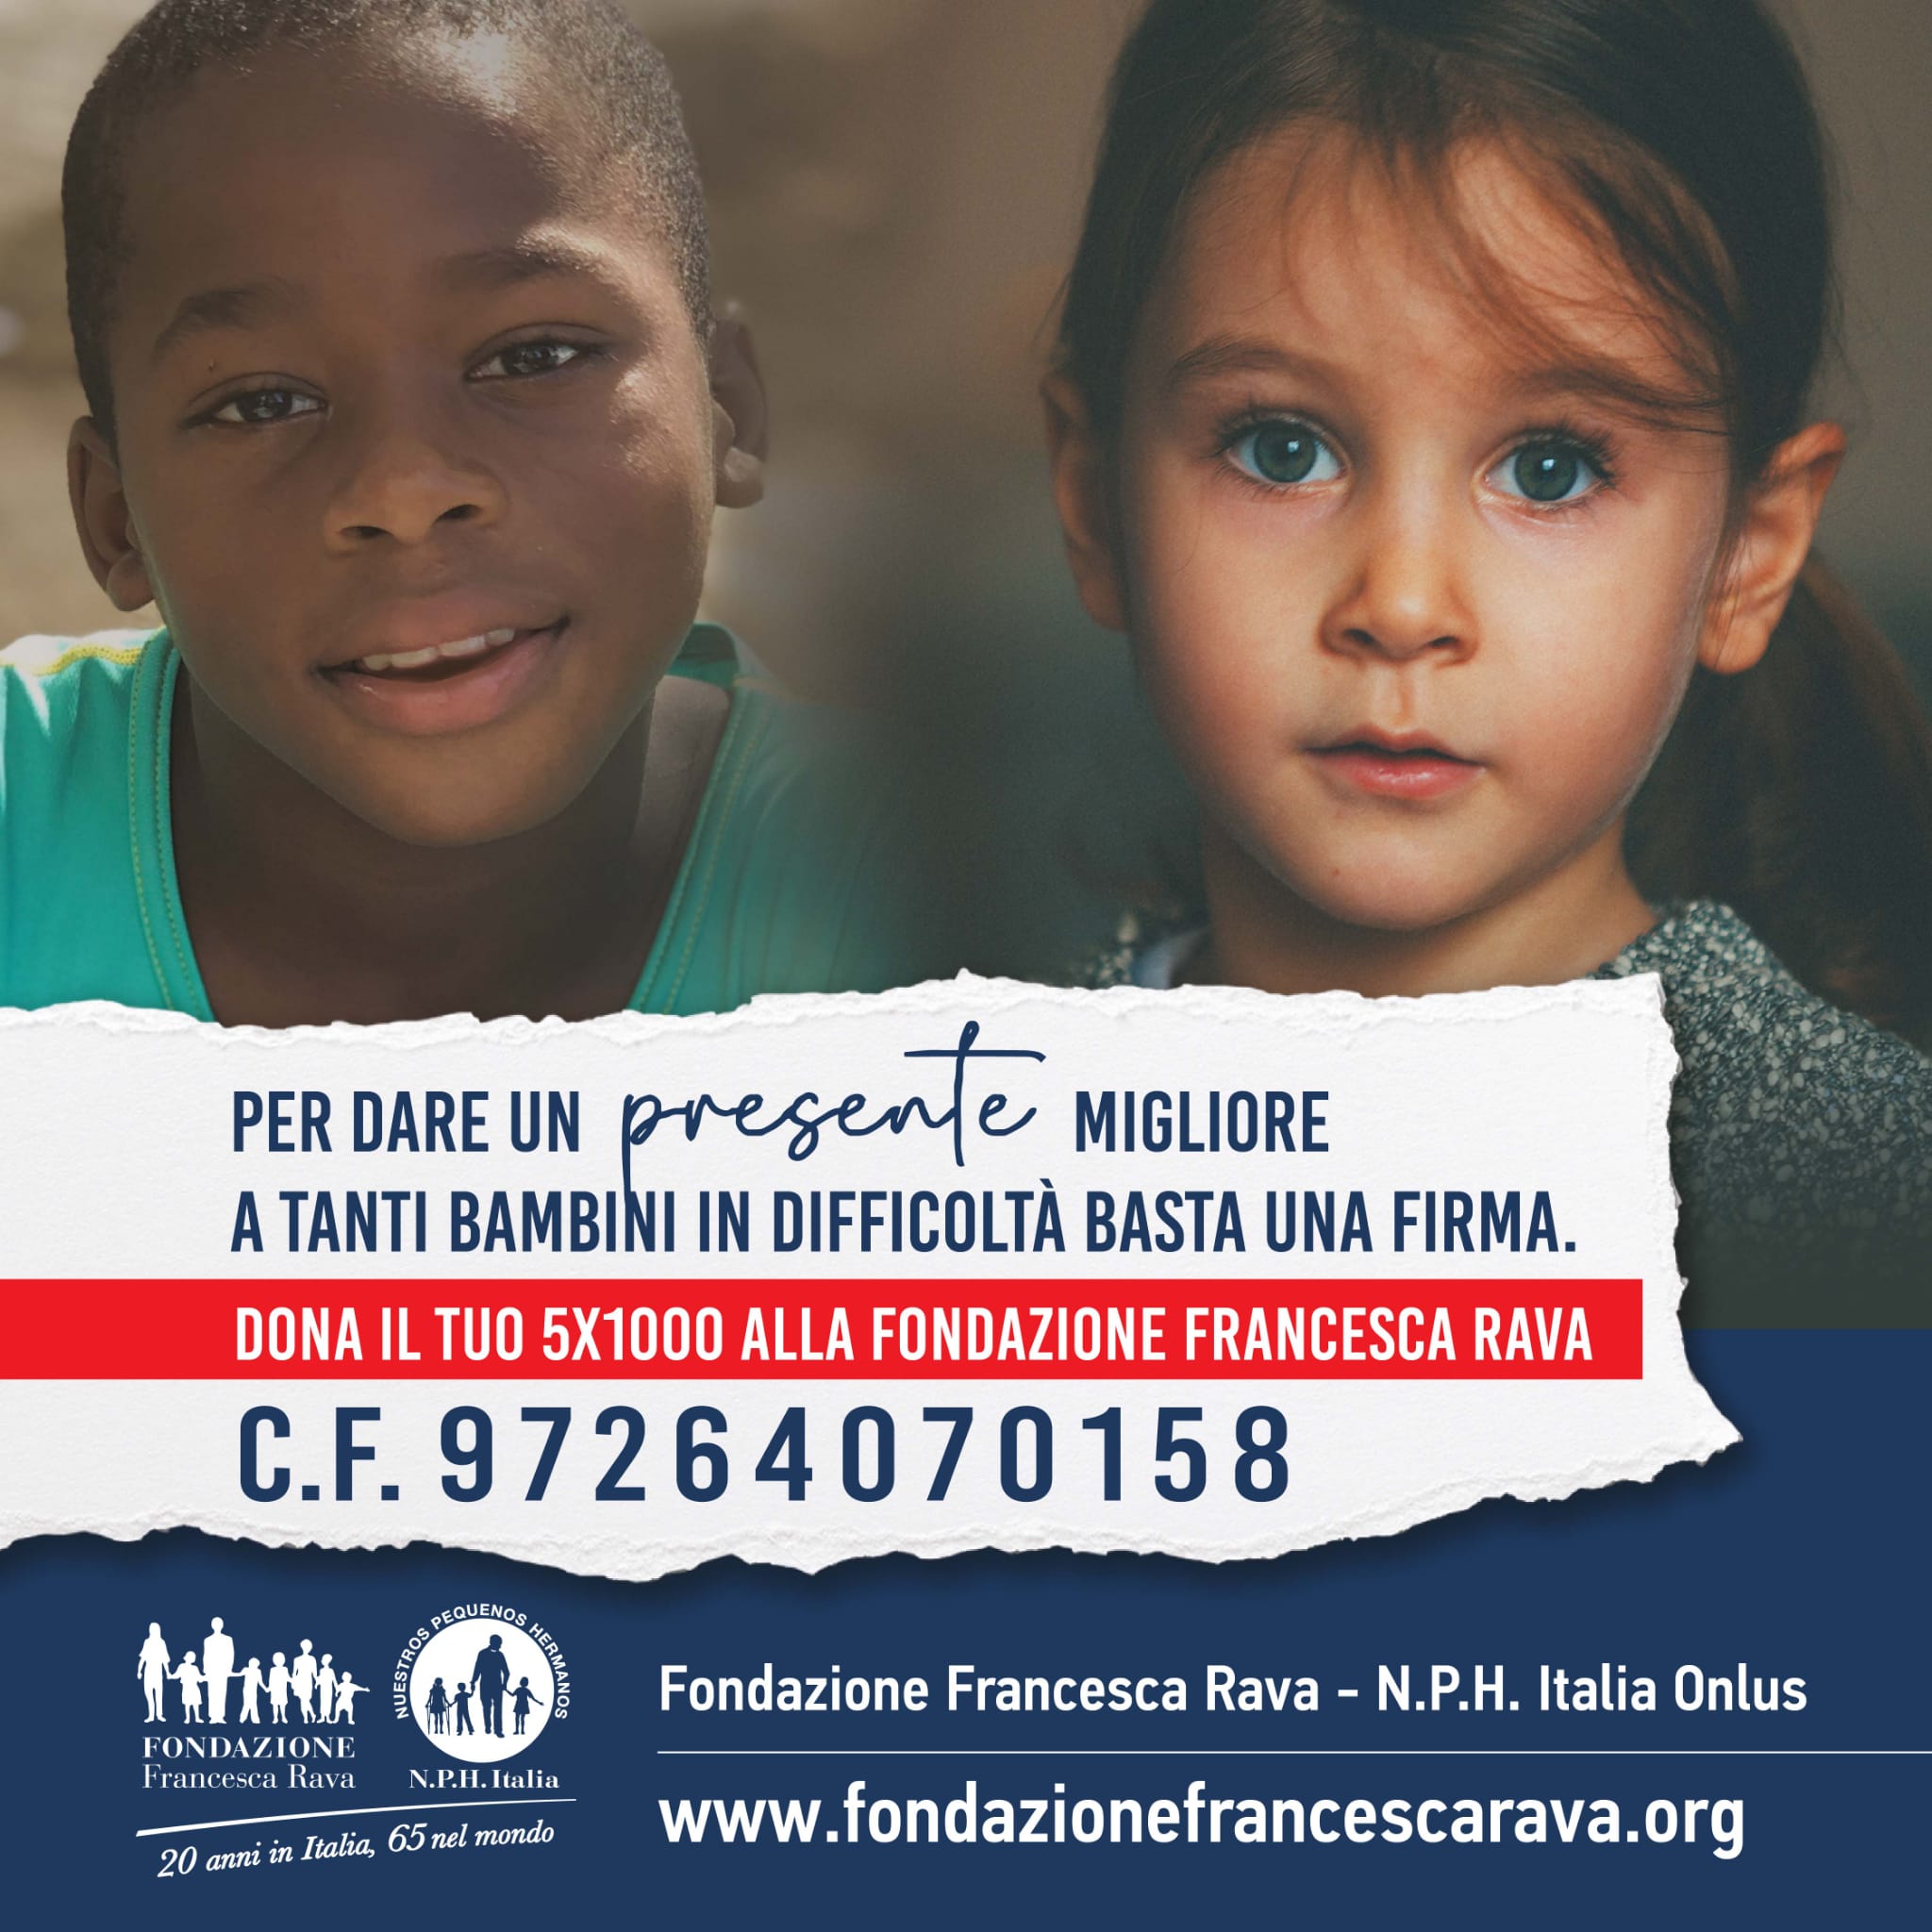 Dona il 5x1000 alla Fondazione Francesca Rava, hai fino al 30 settembre per presentare la tua dichiarazione dei ridditi e inserire il CF 97264070158